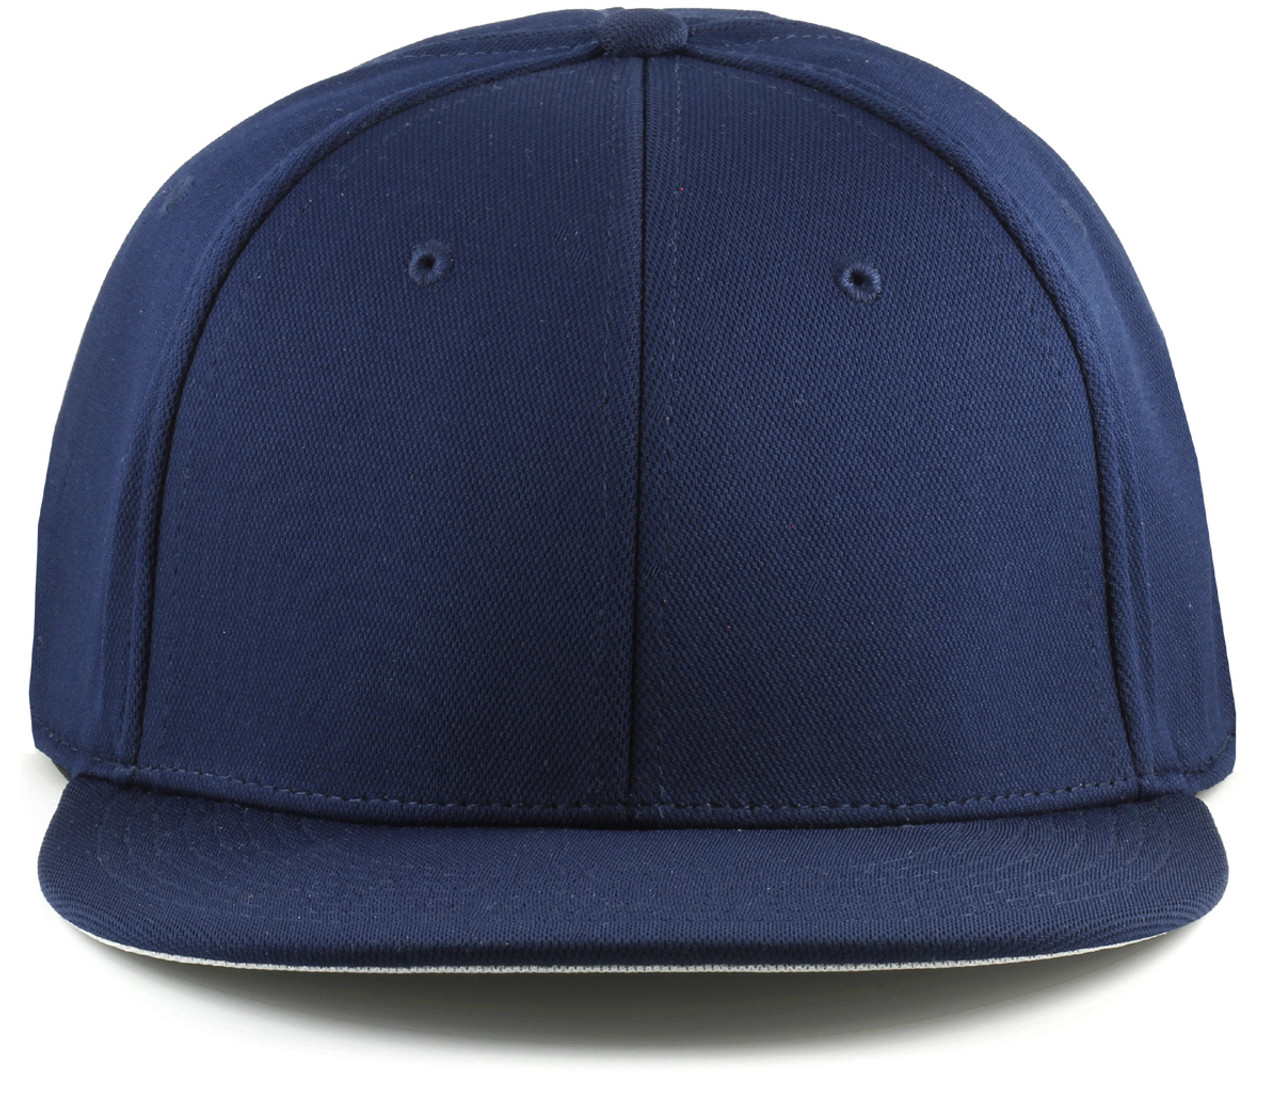 Sportflex Xlxxl Baseball Caps For Big Heads Navy